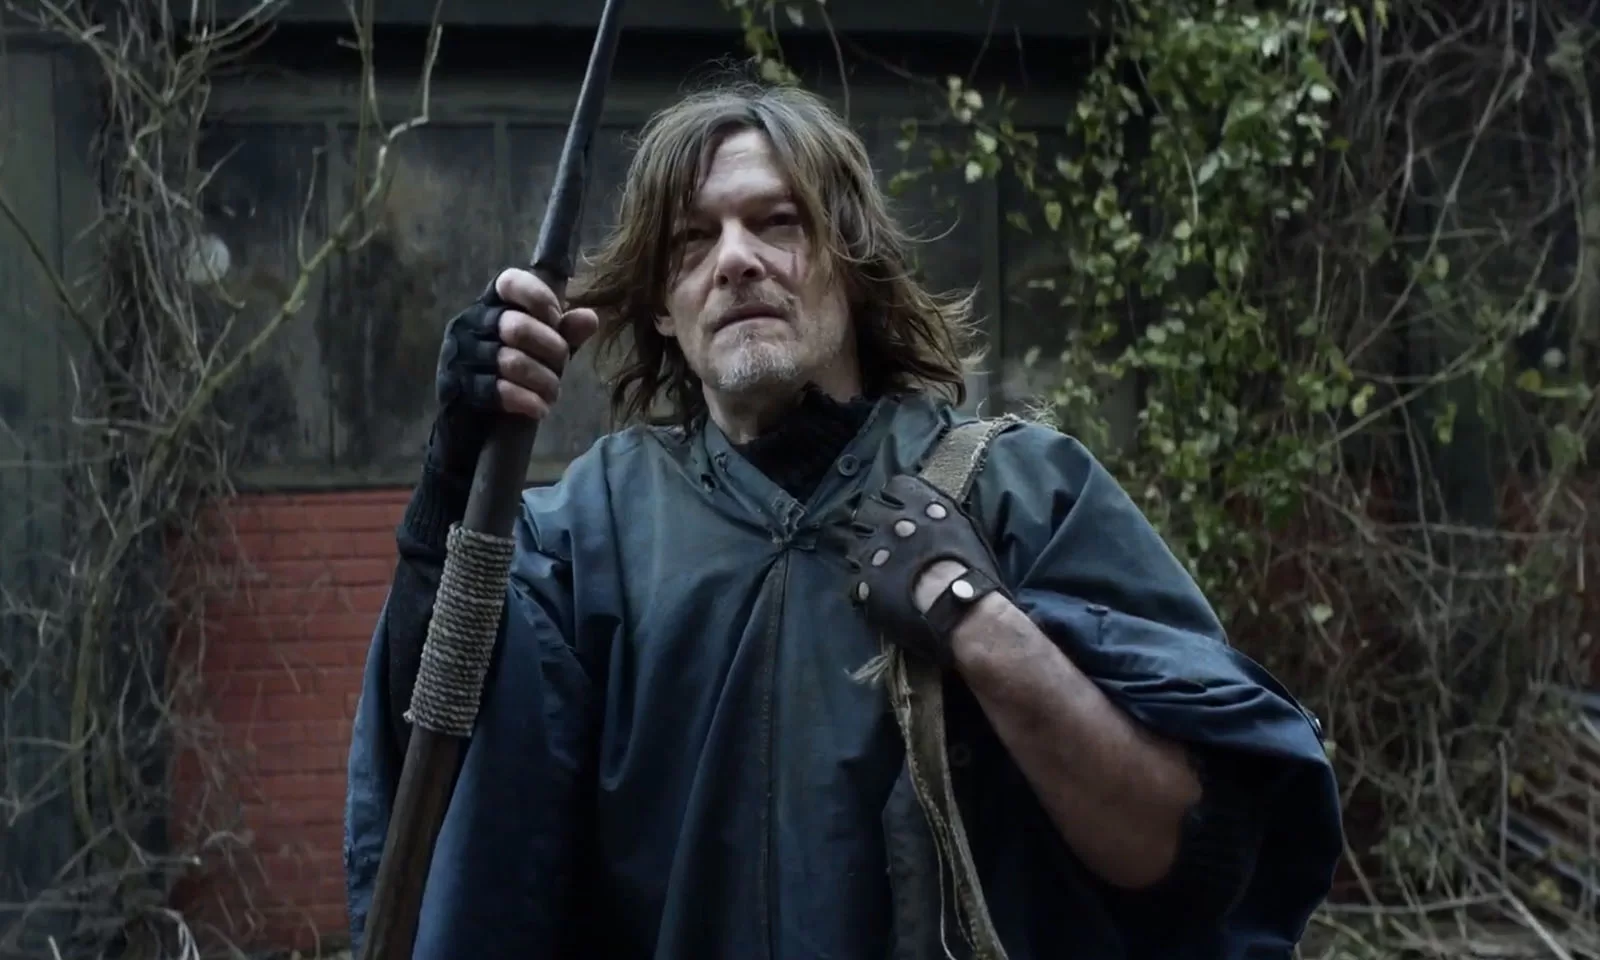 Daryl segurando uma lança e perdido na França em cena de The Walking Dead: Daryl Dixon.